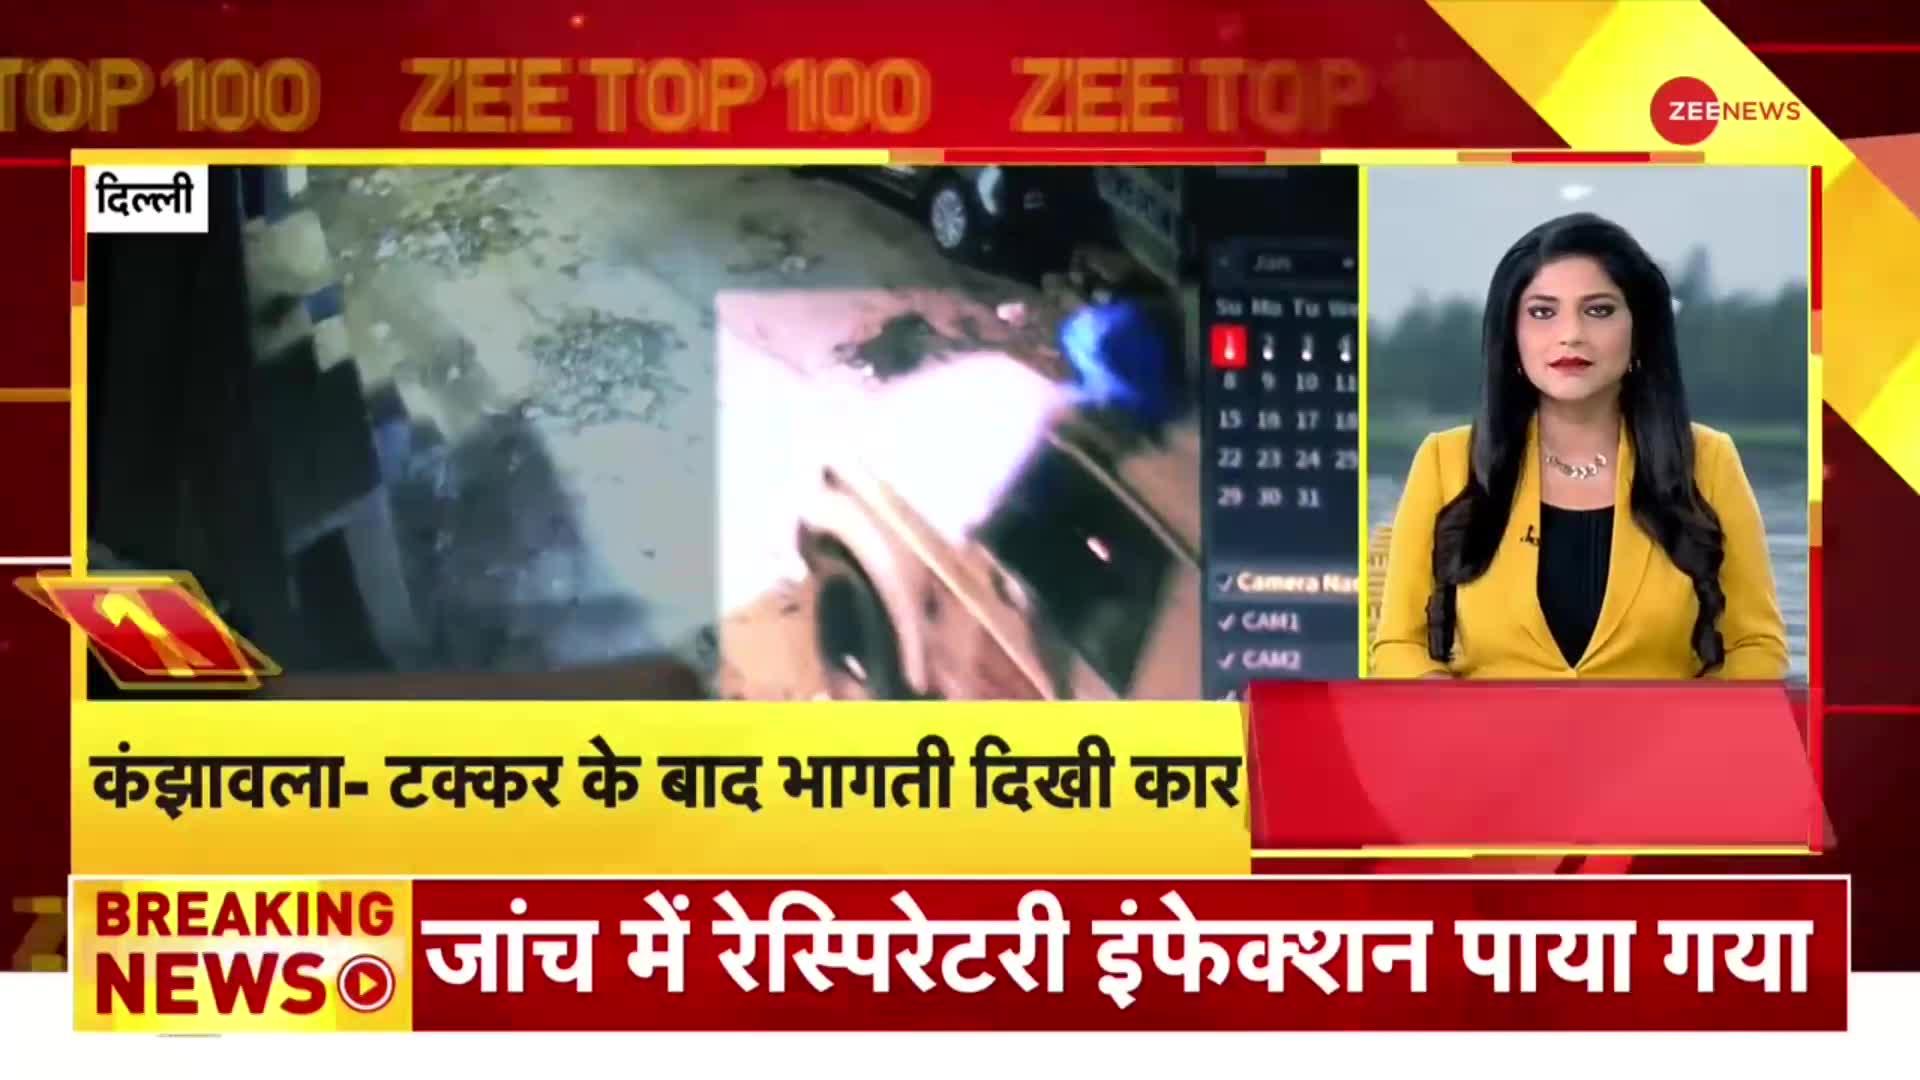 ZEE TOP 100: दिल्ली के कंझावला मामले में Nidhi पर उठे सवाल, हादसे के बाद भागती नजर आई